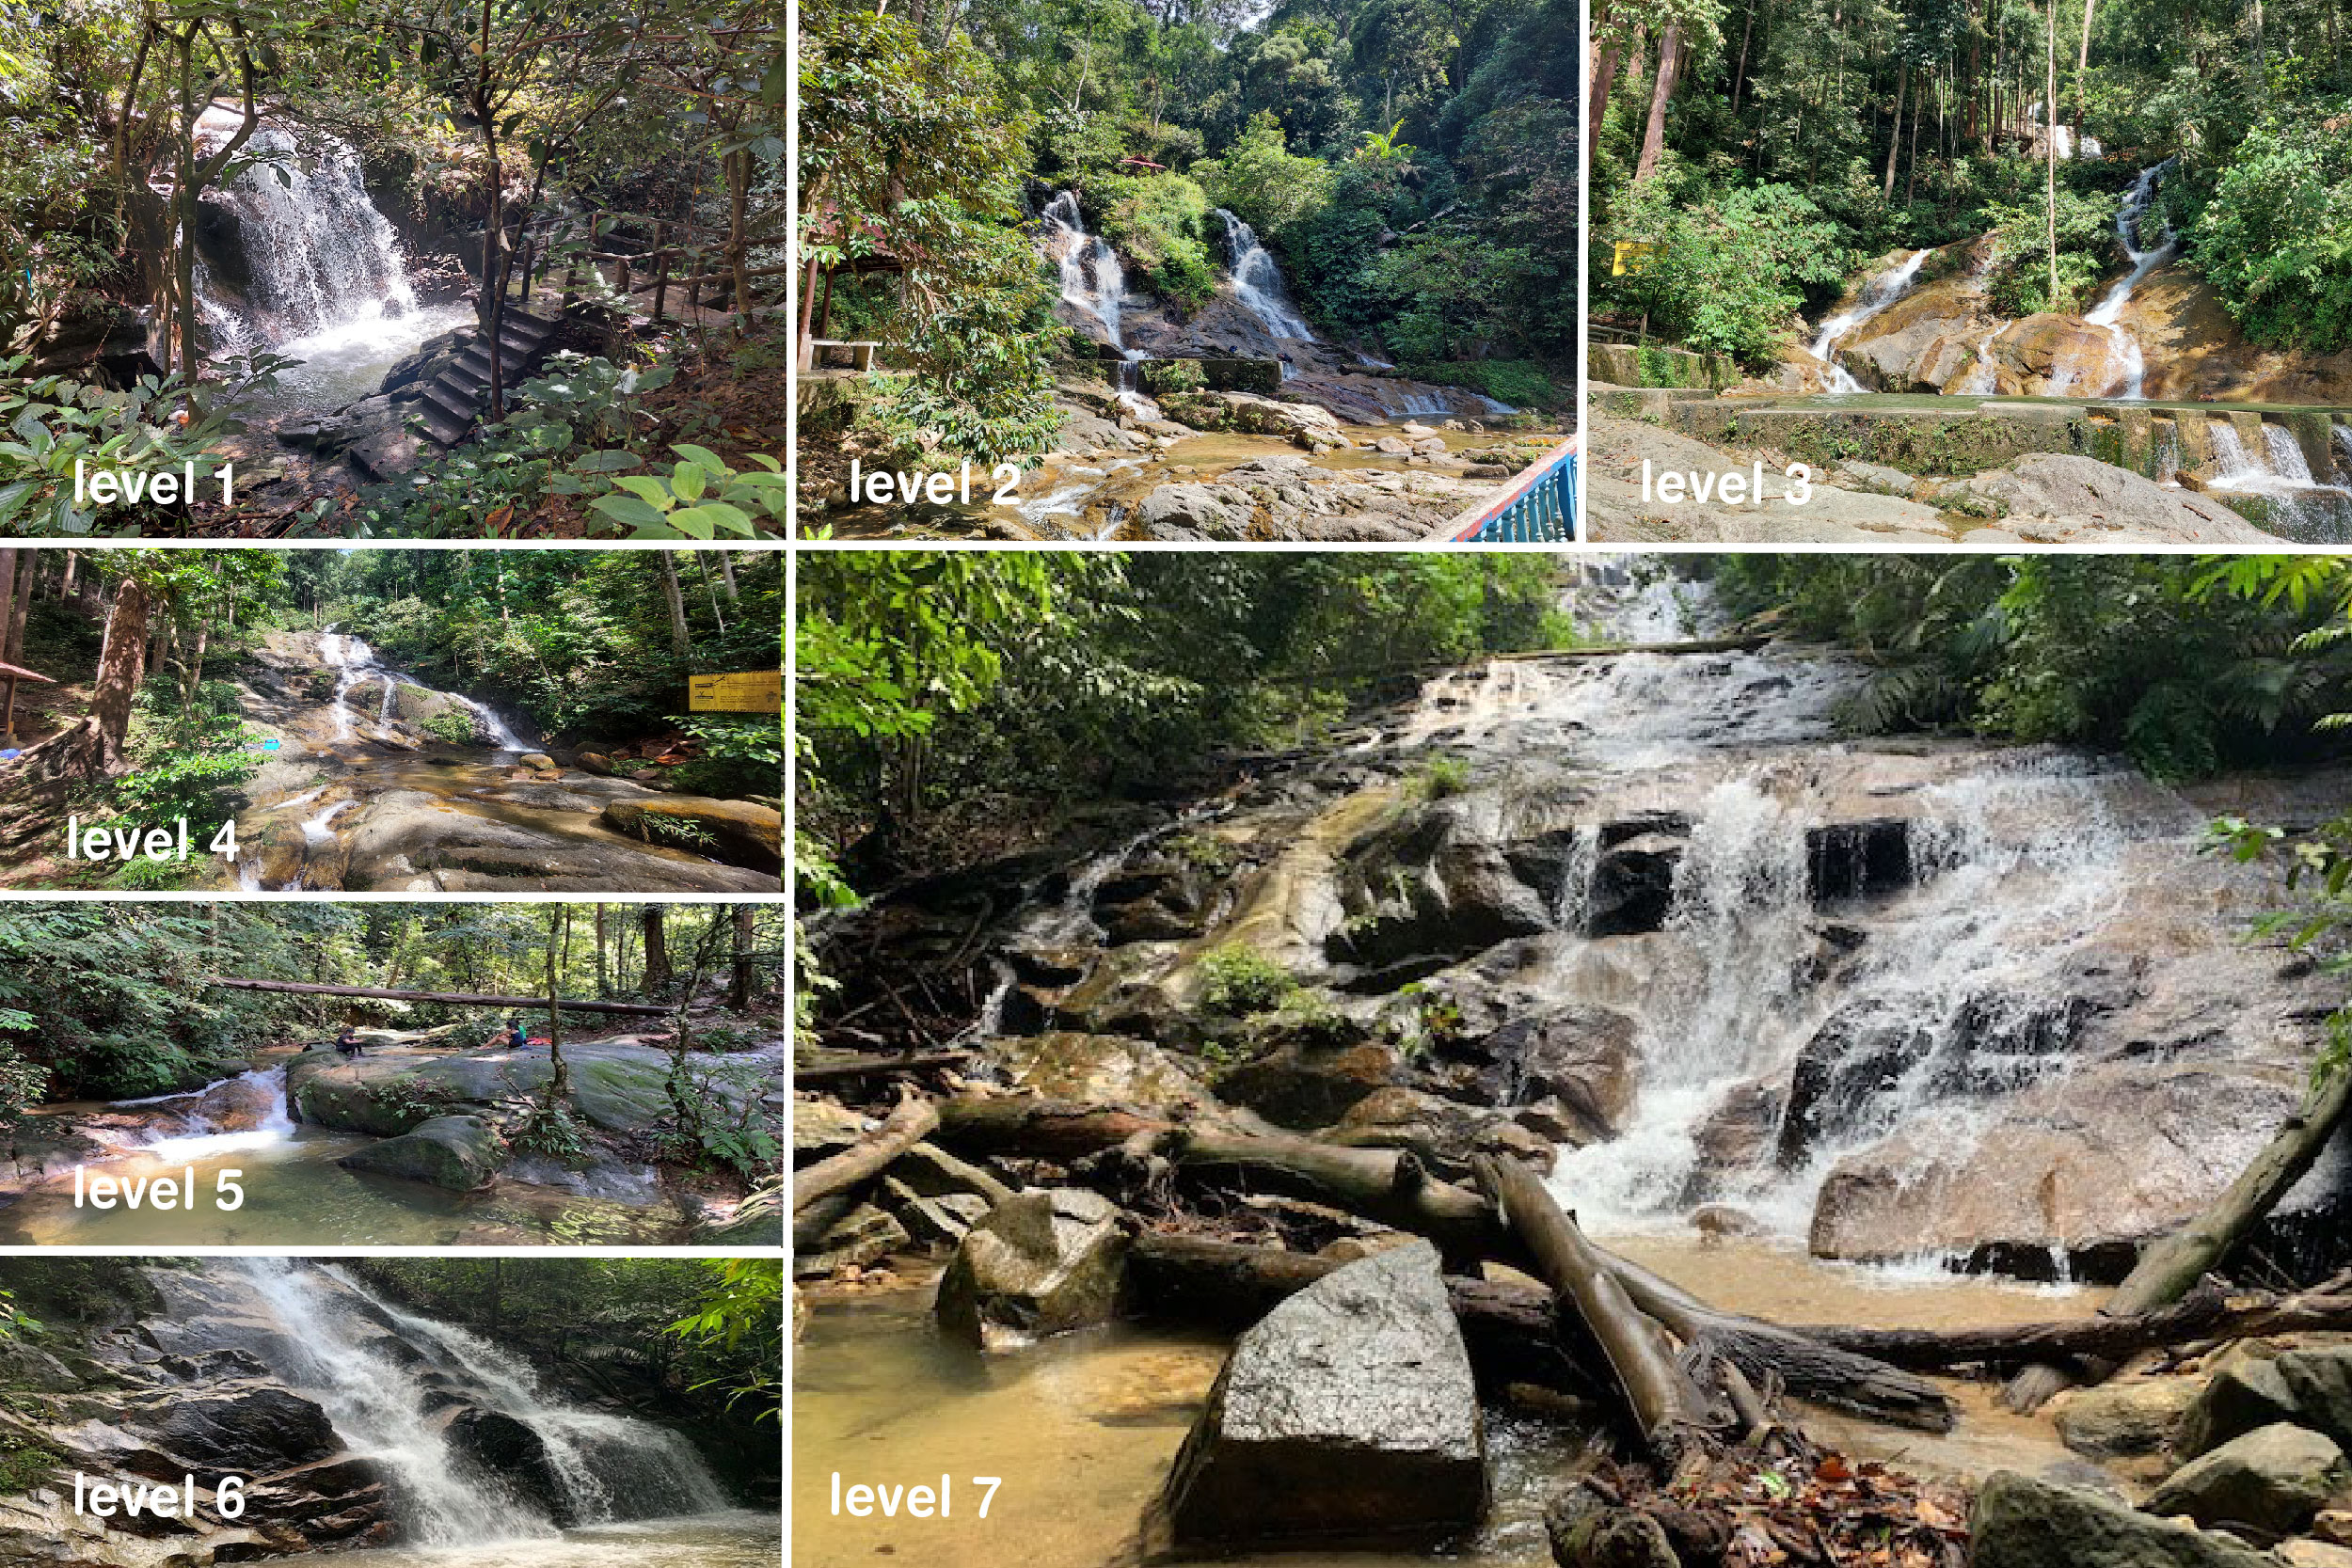 康情生态森林公园位于万挠近500公顷的森林保护区中，那里有7层瀑布，每一层的瀑布都有不一样的景色。-selangor.travel提供/精彩大马制图-